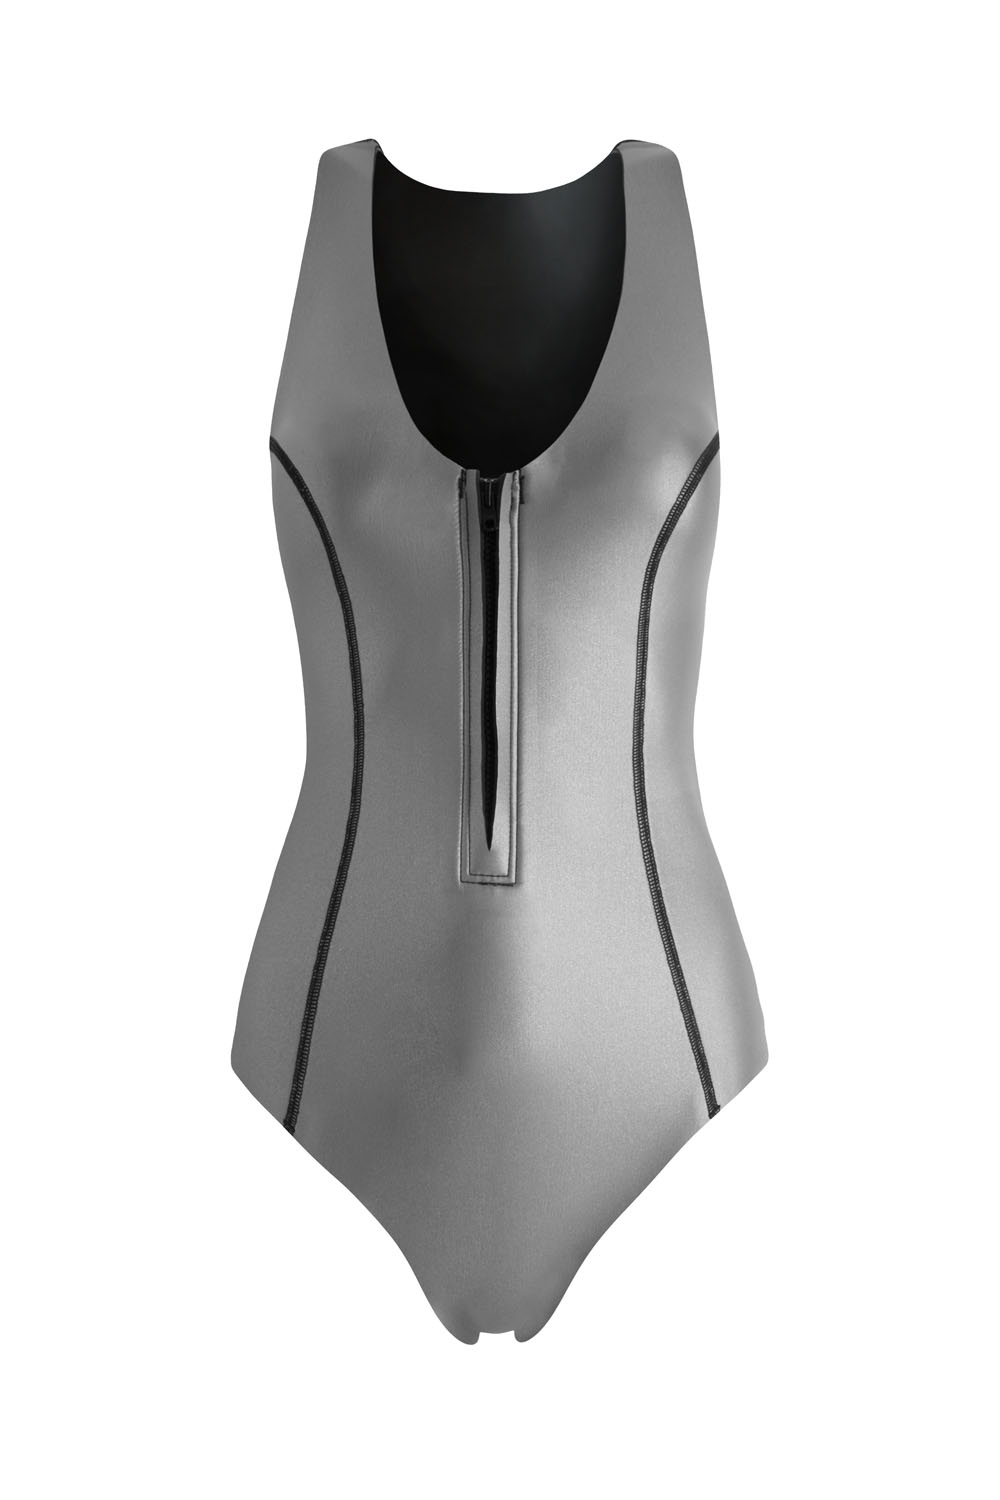 Sustainable Luxury Swimwear / Ropa de baño sostenible, neoprene wetsuit / bañador neopreno, surf ecoprene. Sylvia by NOW_THEN,